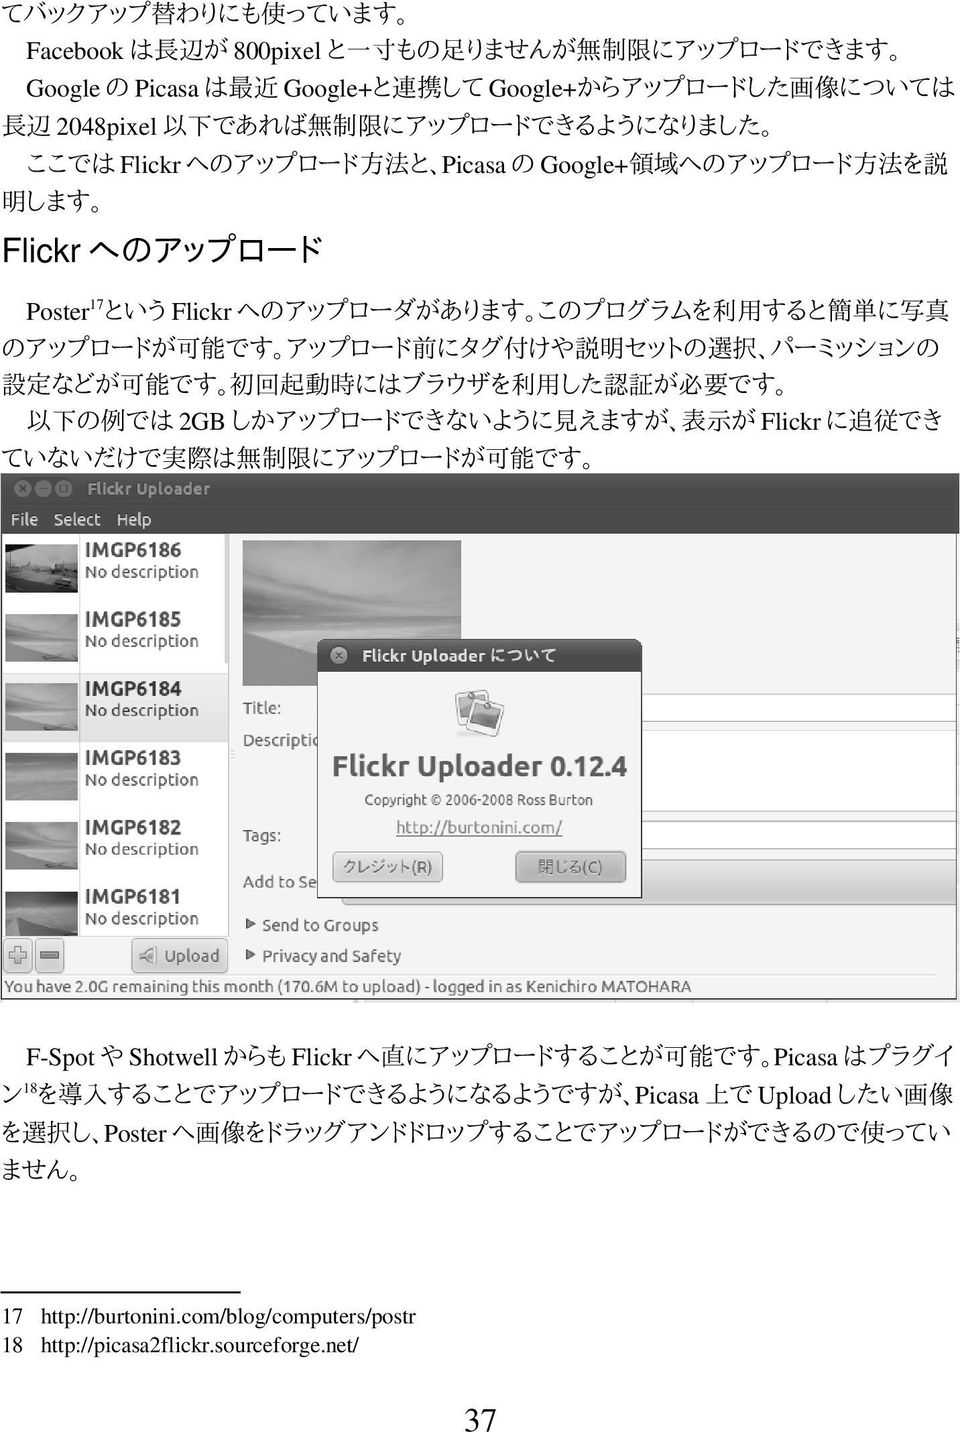 設定などが可能です 初回起動時にはブラウザを利用した認証が必要です 以下の例では 2GB しかアップロードできないように見えますが 表示が Flickr に追従でき ていないだけで実際は無制限にアップロードが可能です F-Spot や Shotwell からも Flickr へ直にアップロードすることが可能です Picasa はプラグイ